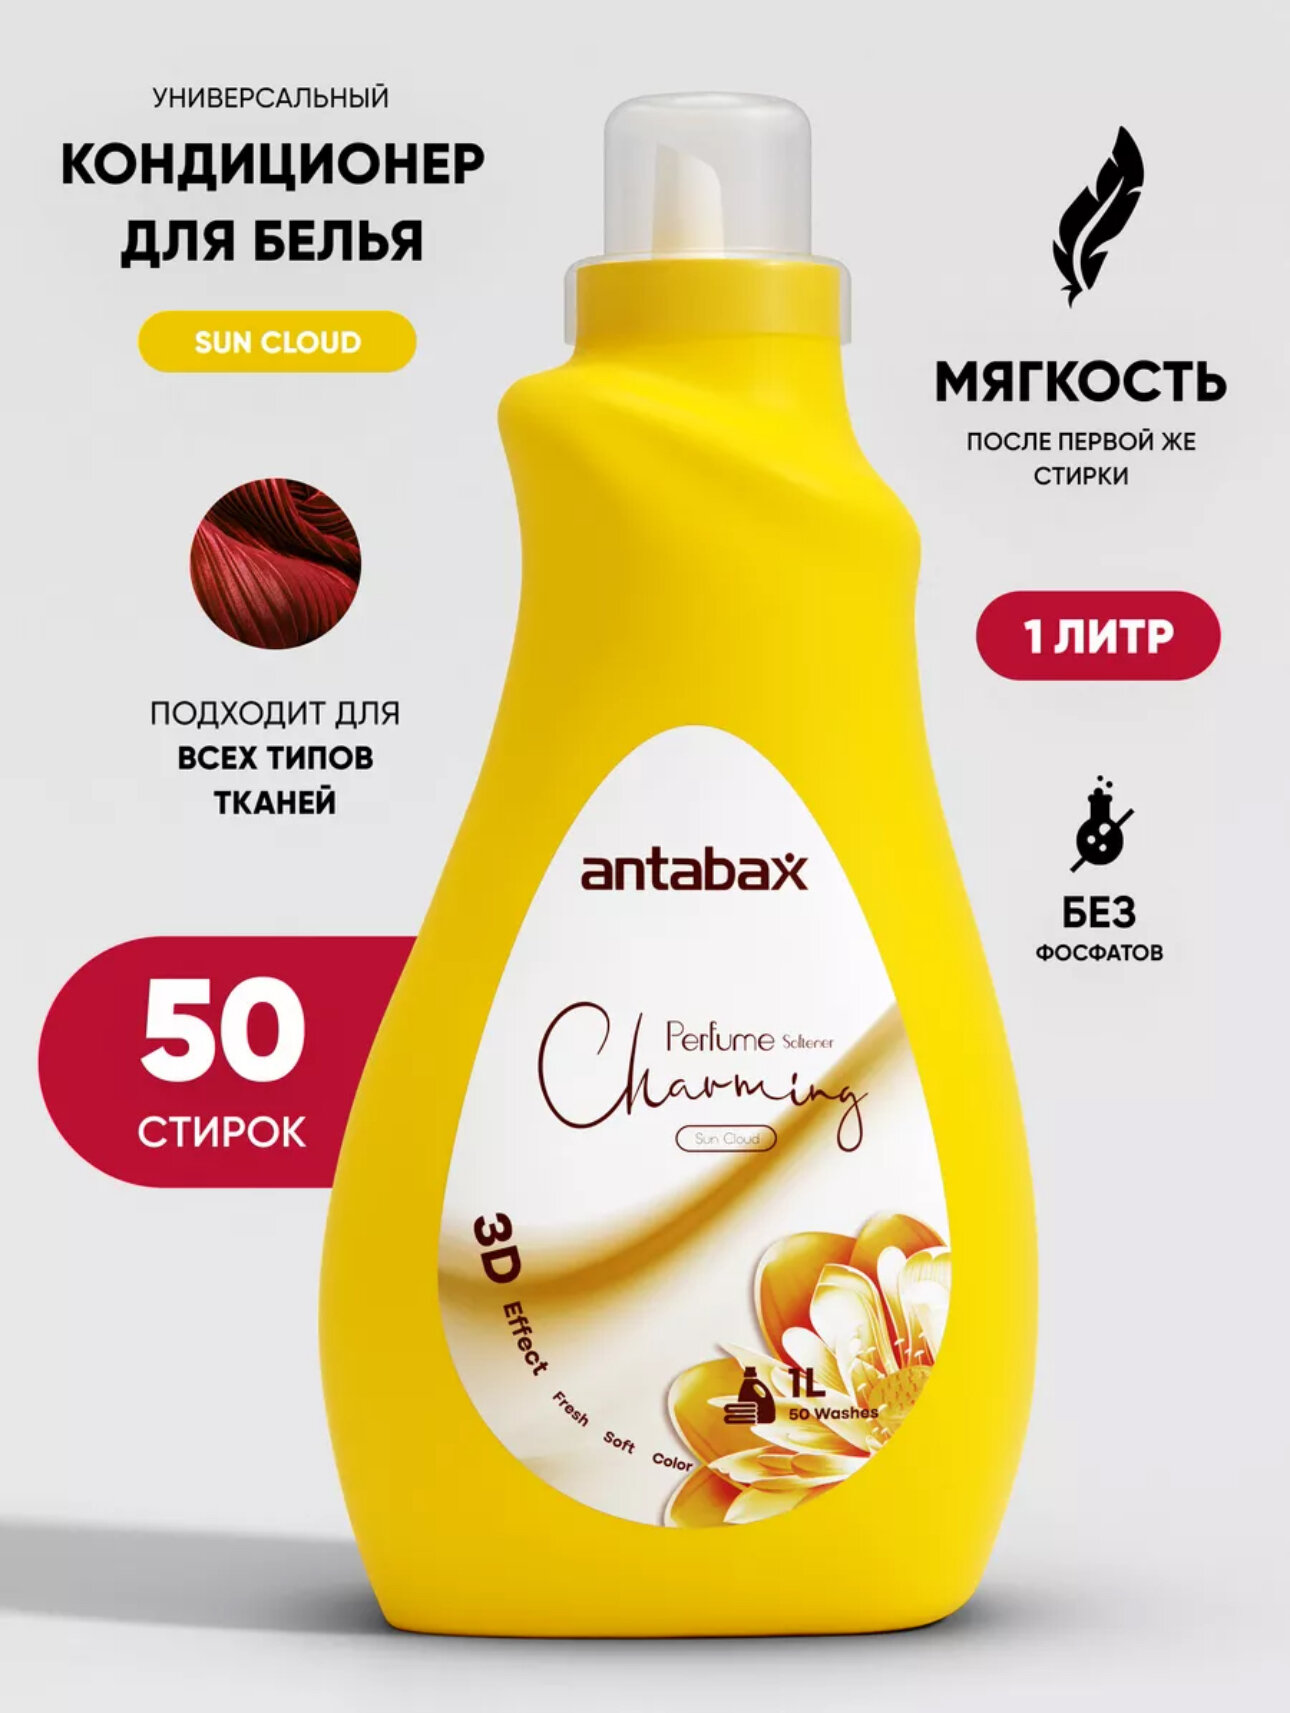 Кондиционер для белья парфюмированный Antabax Sun Cloud 1 литр